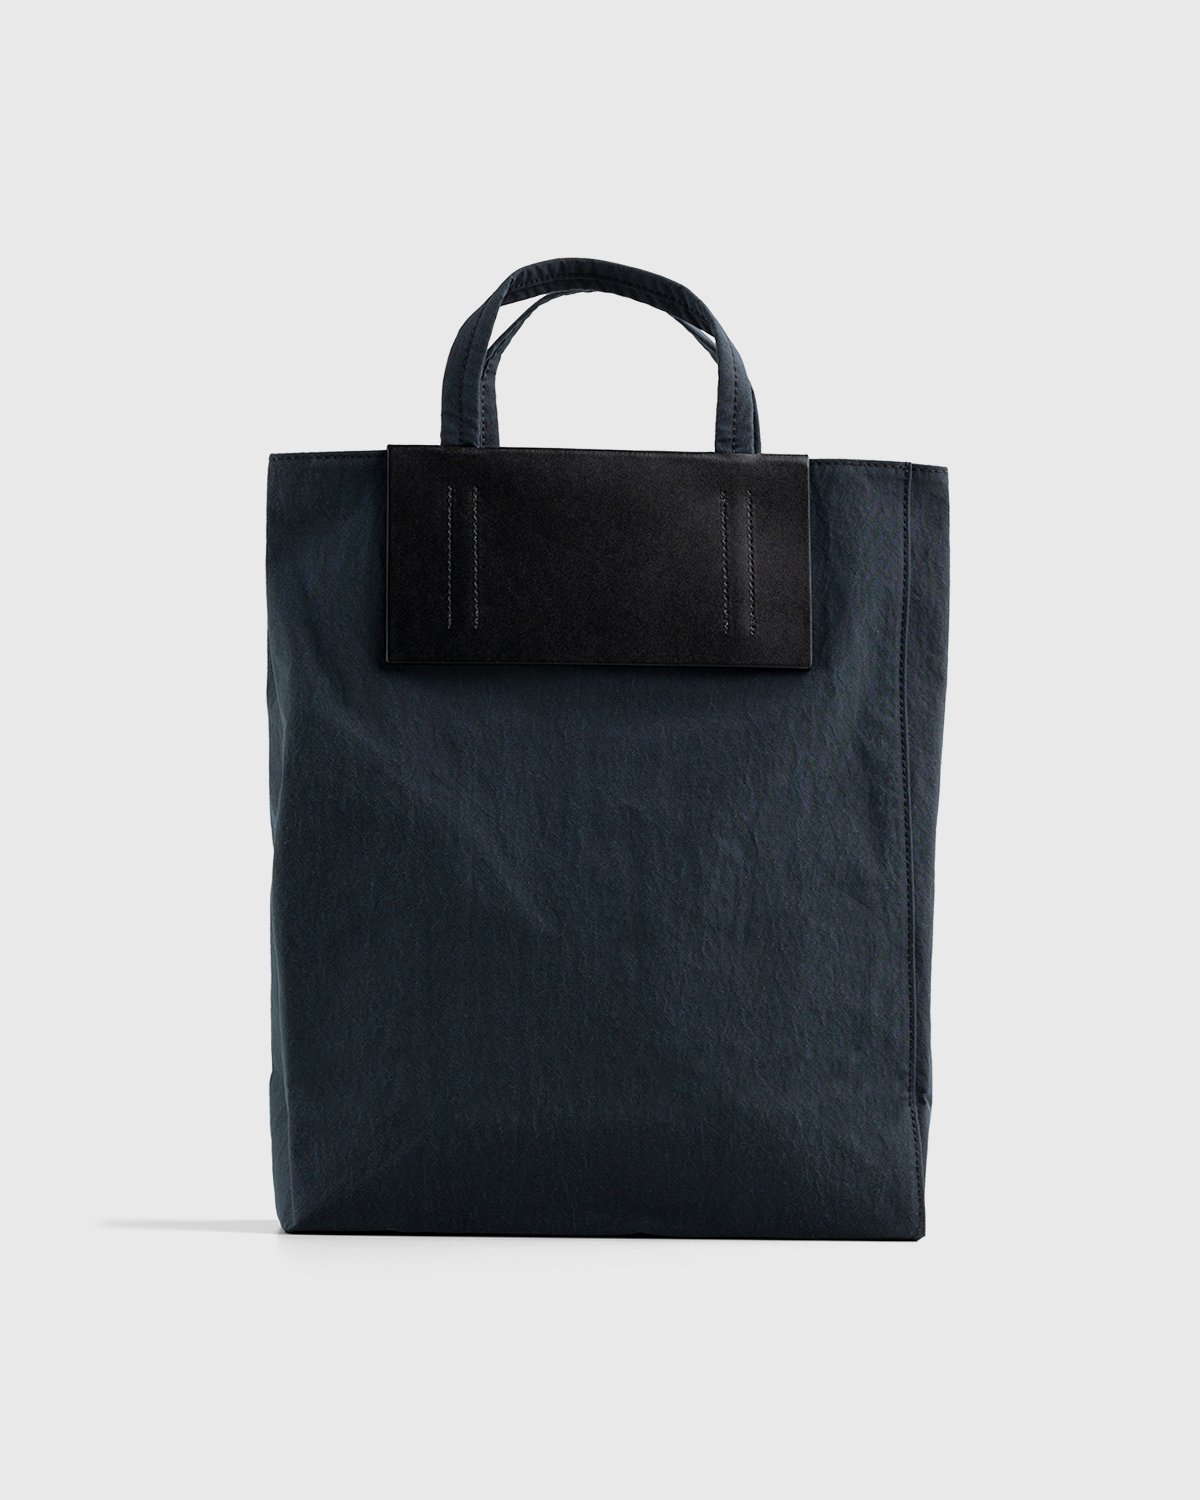 Acne Studios - Medium Nylon Tote Bag Black - Accessories - Black - Image 2